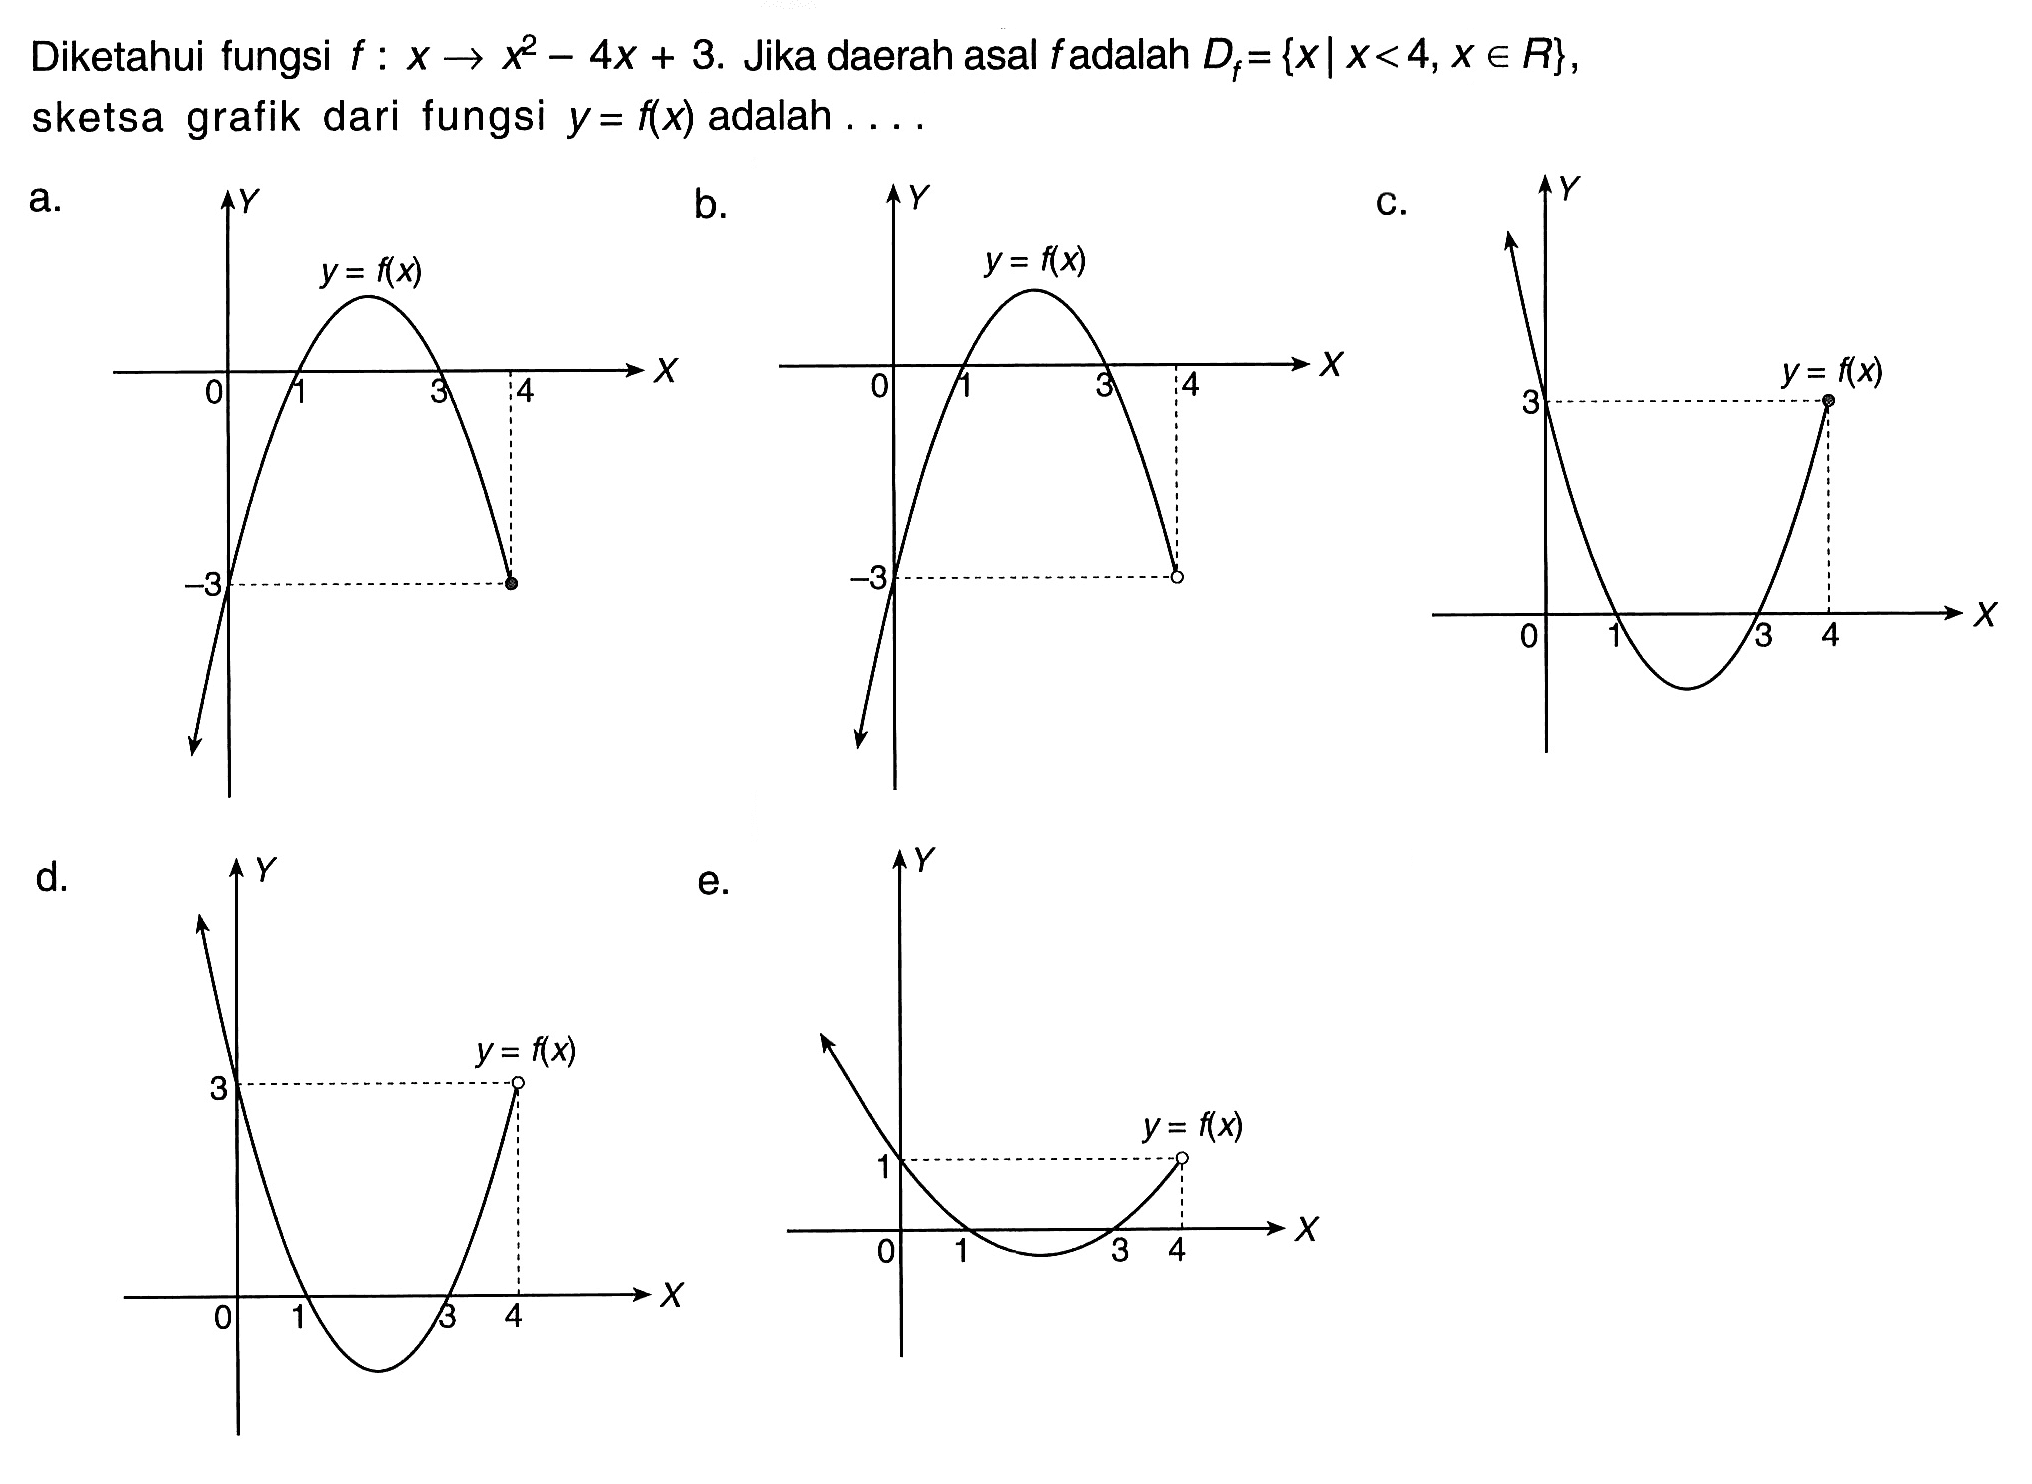 Diketahui fungsi f:x->x^2-4 x+3. Jika daerah asal f adalah  Df={x|x<4, x e R} sketsa grafik dari fungsi y=f(x) adalah ...a. b. c. d. e.